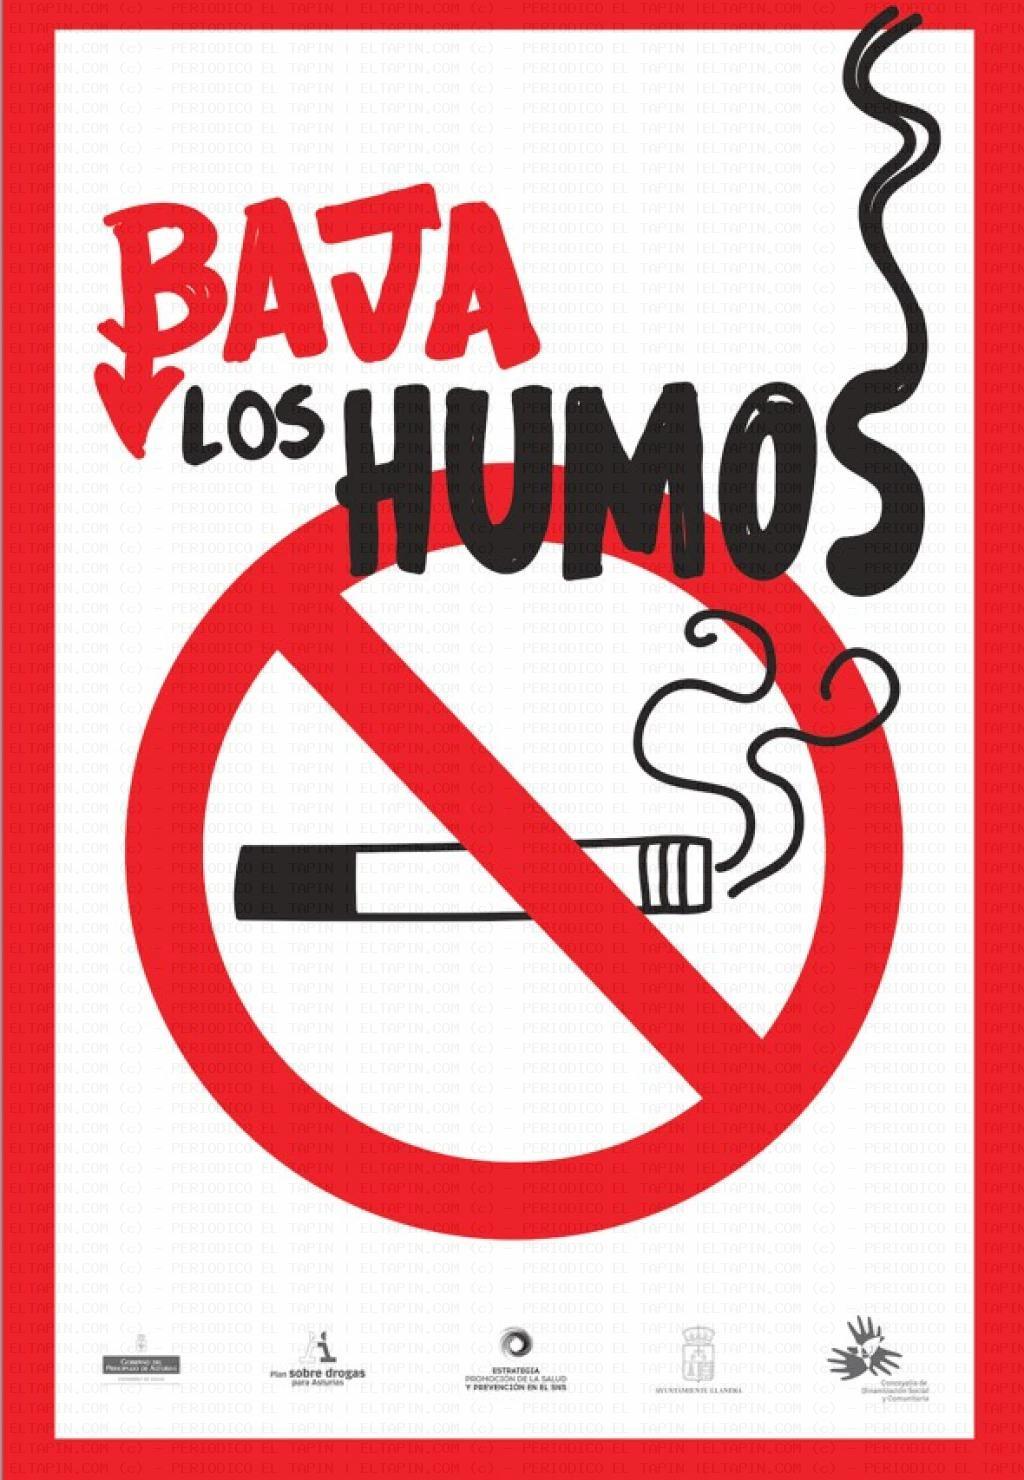 El Tapin - Llanera difunde la campaña “baja los humos” por el Día Mundial sin Tabaco